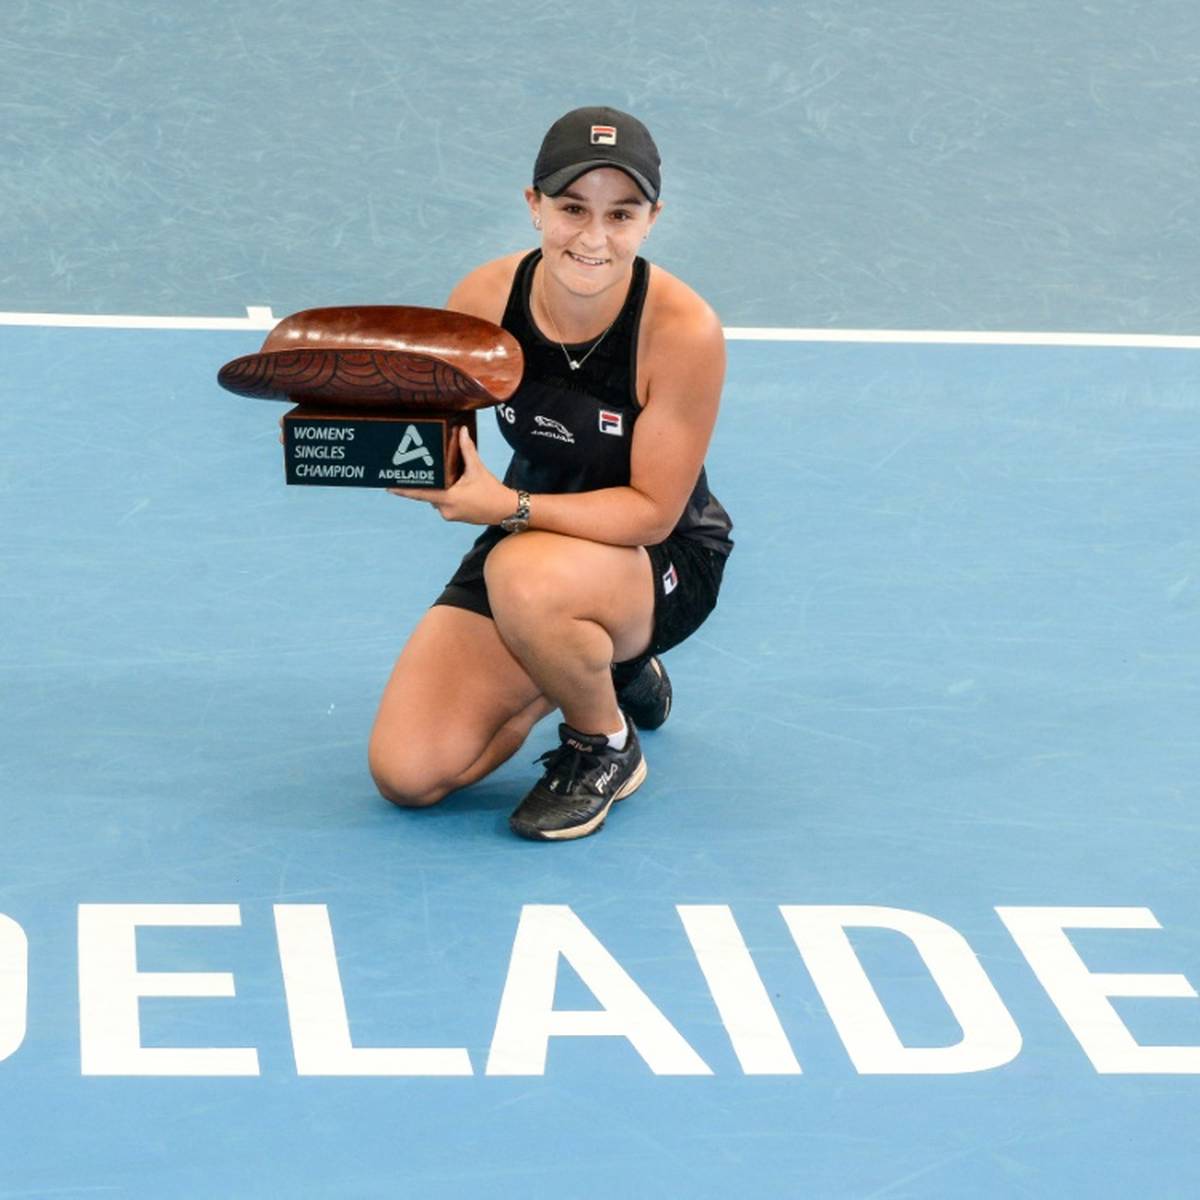 Die Tennis-Weltranglistenerste Ashleigh Barty (25) hat zum zweiten Mal das WTA-Turnier in Adelaide gewonnen.